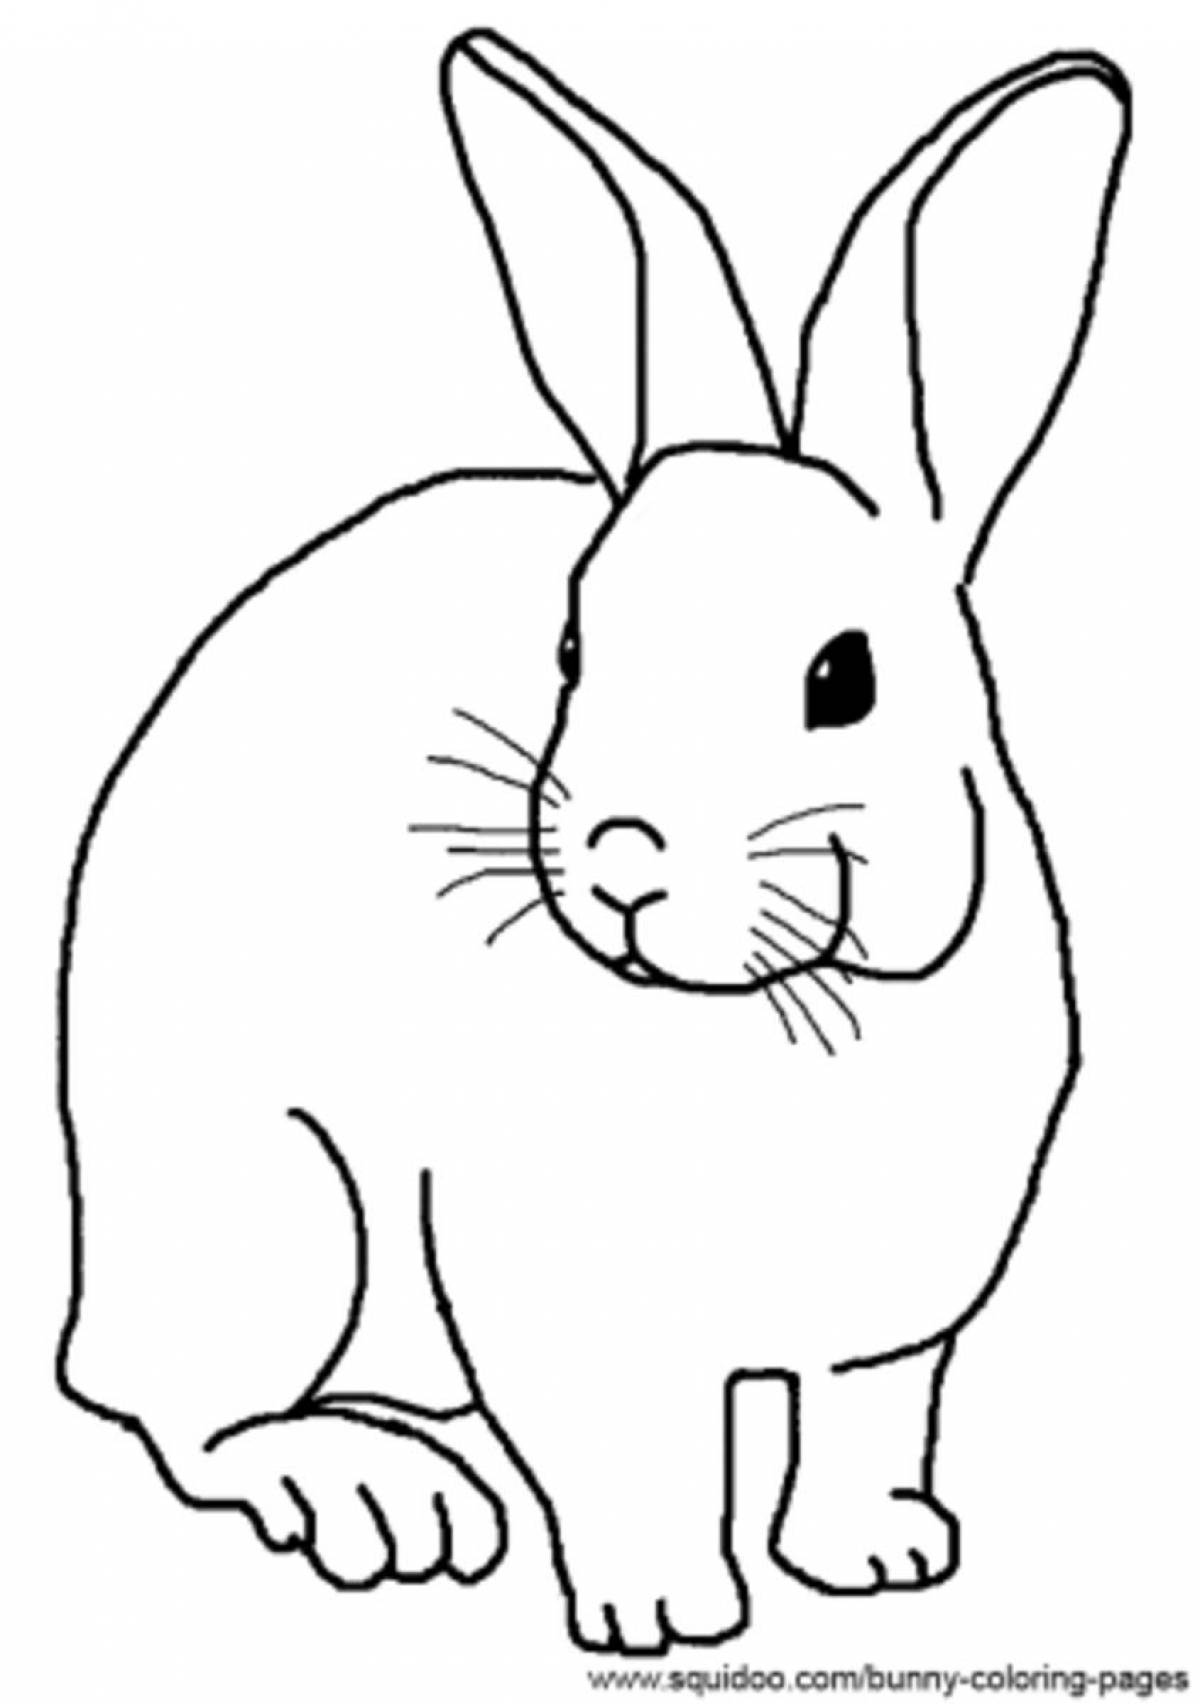 Раскраска кролик на дискете для детей